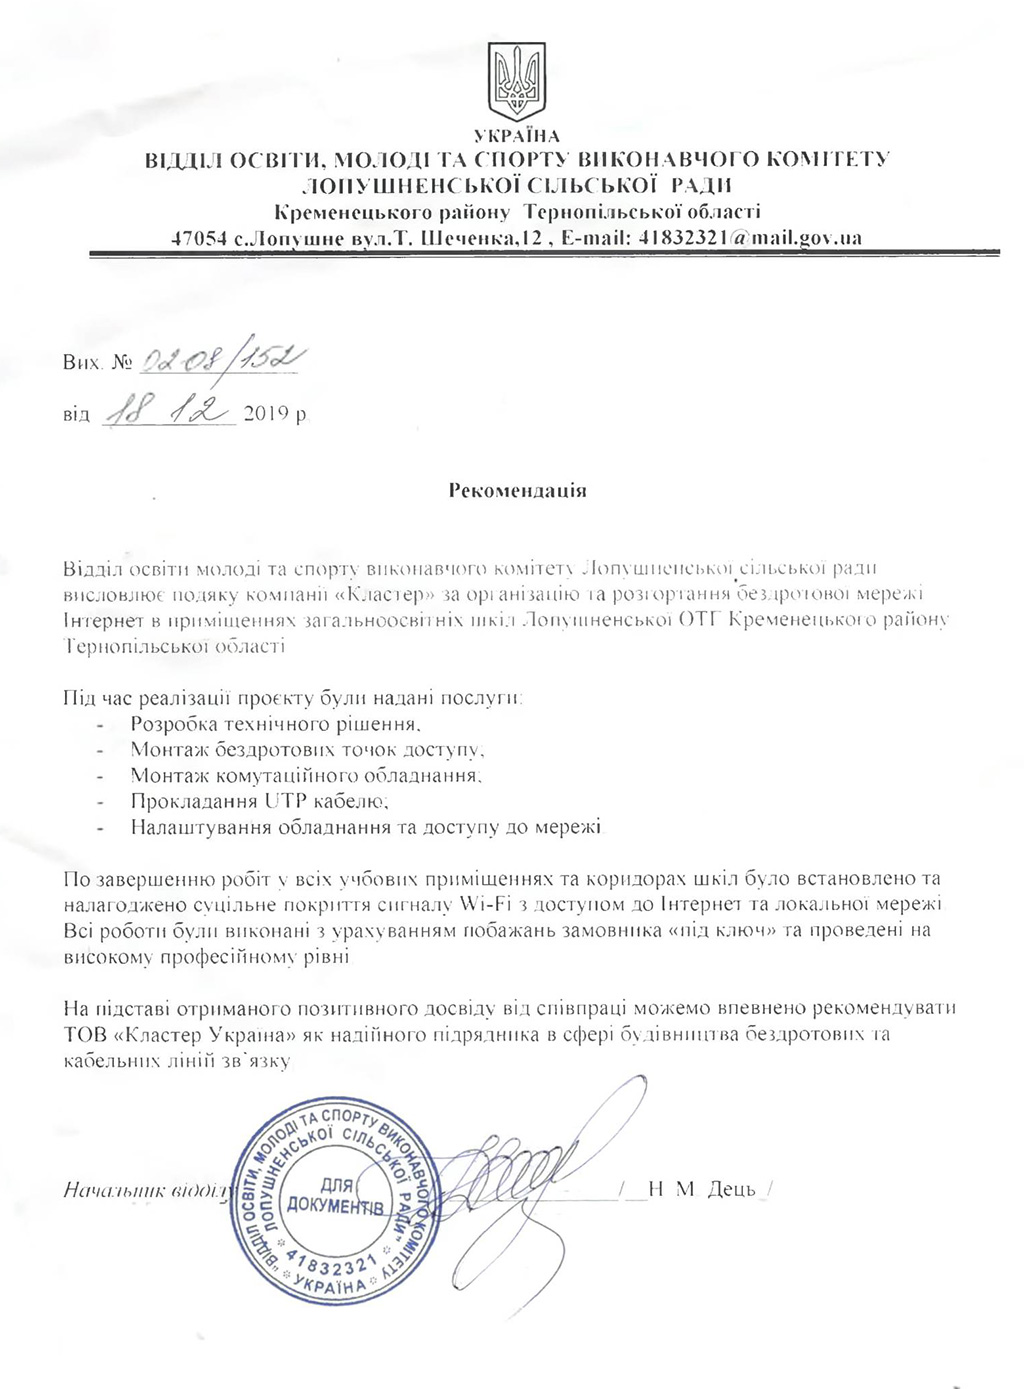 Рекомендаційний лист від Відділу освіти молоді та спорту Виконавчого комітету Лопушненської сільської ради